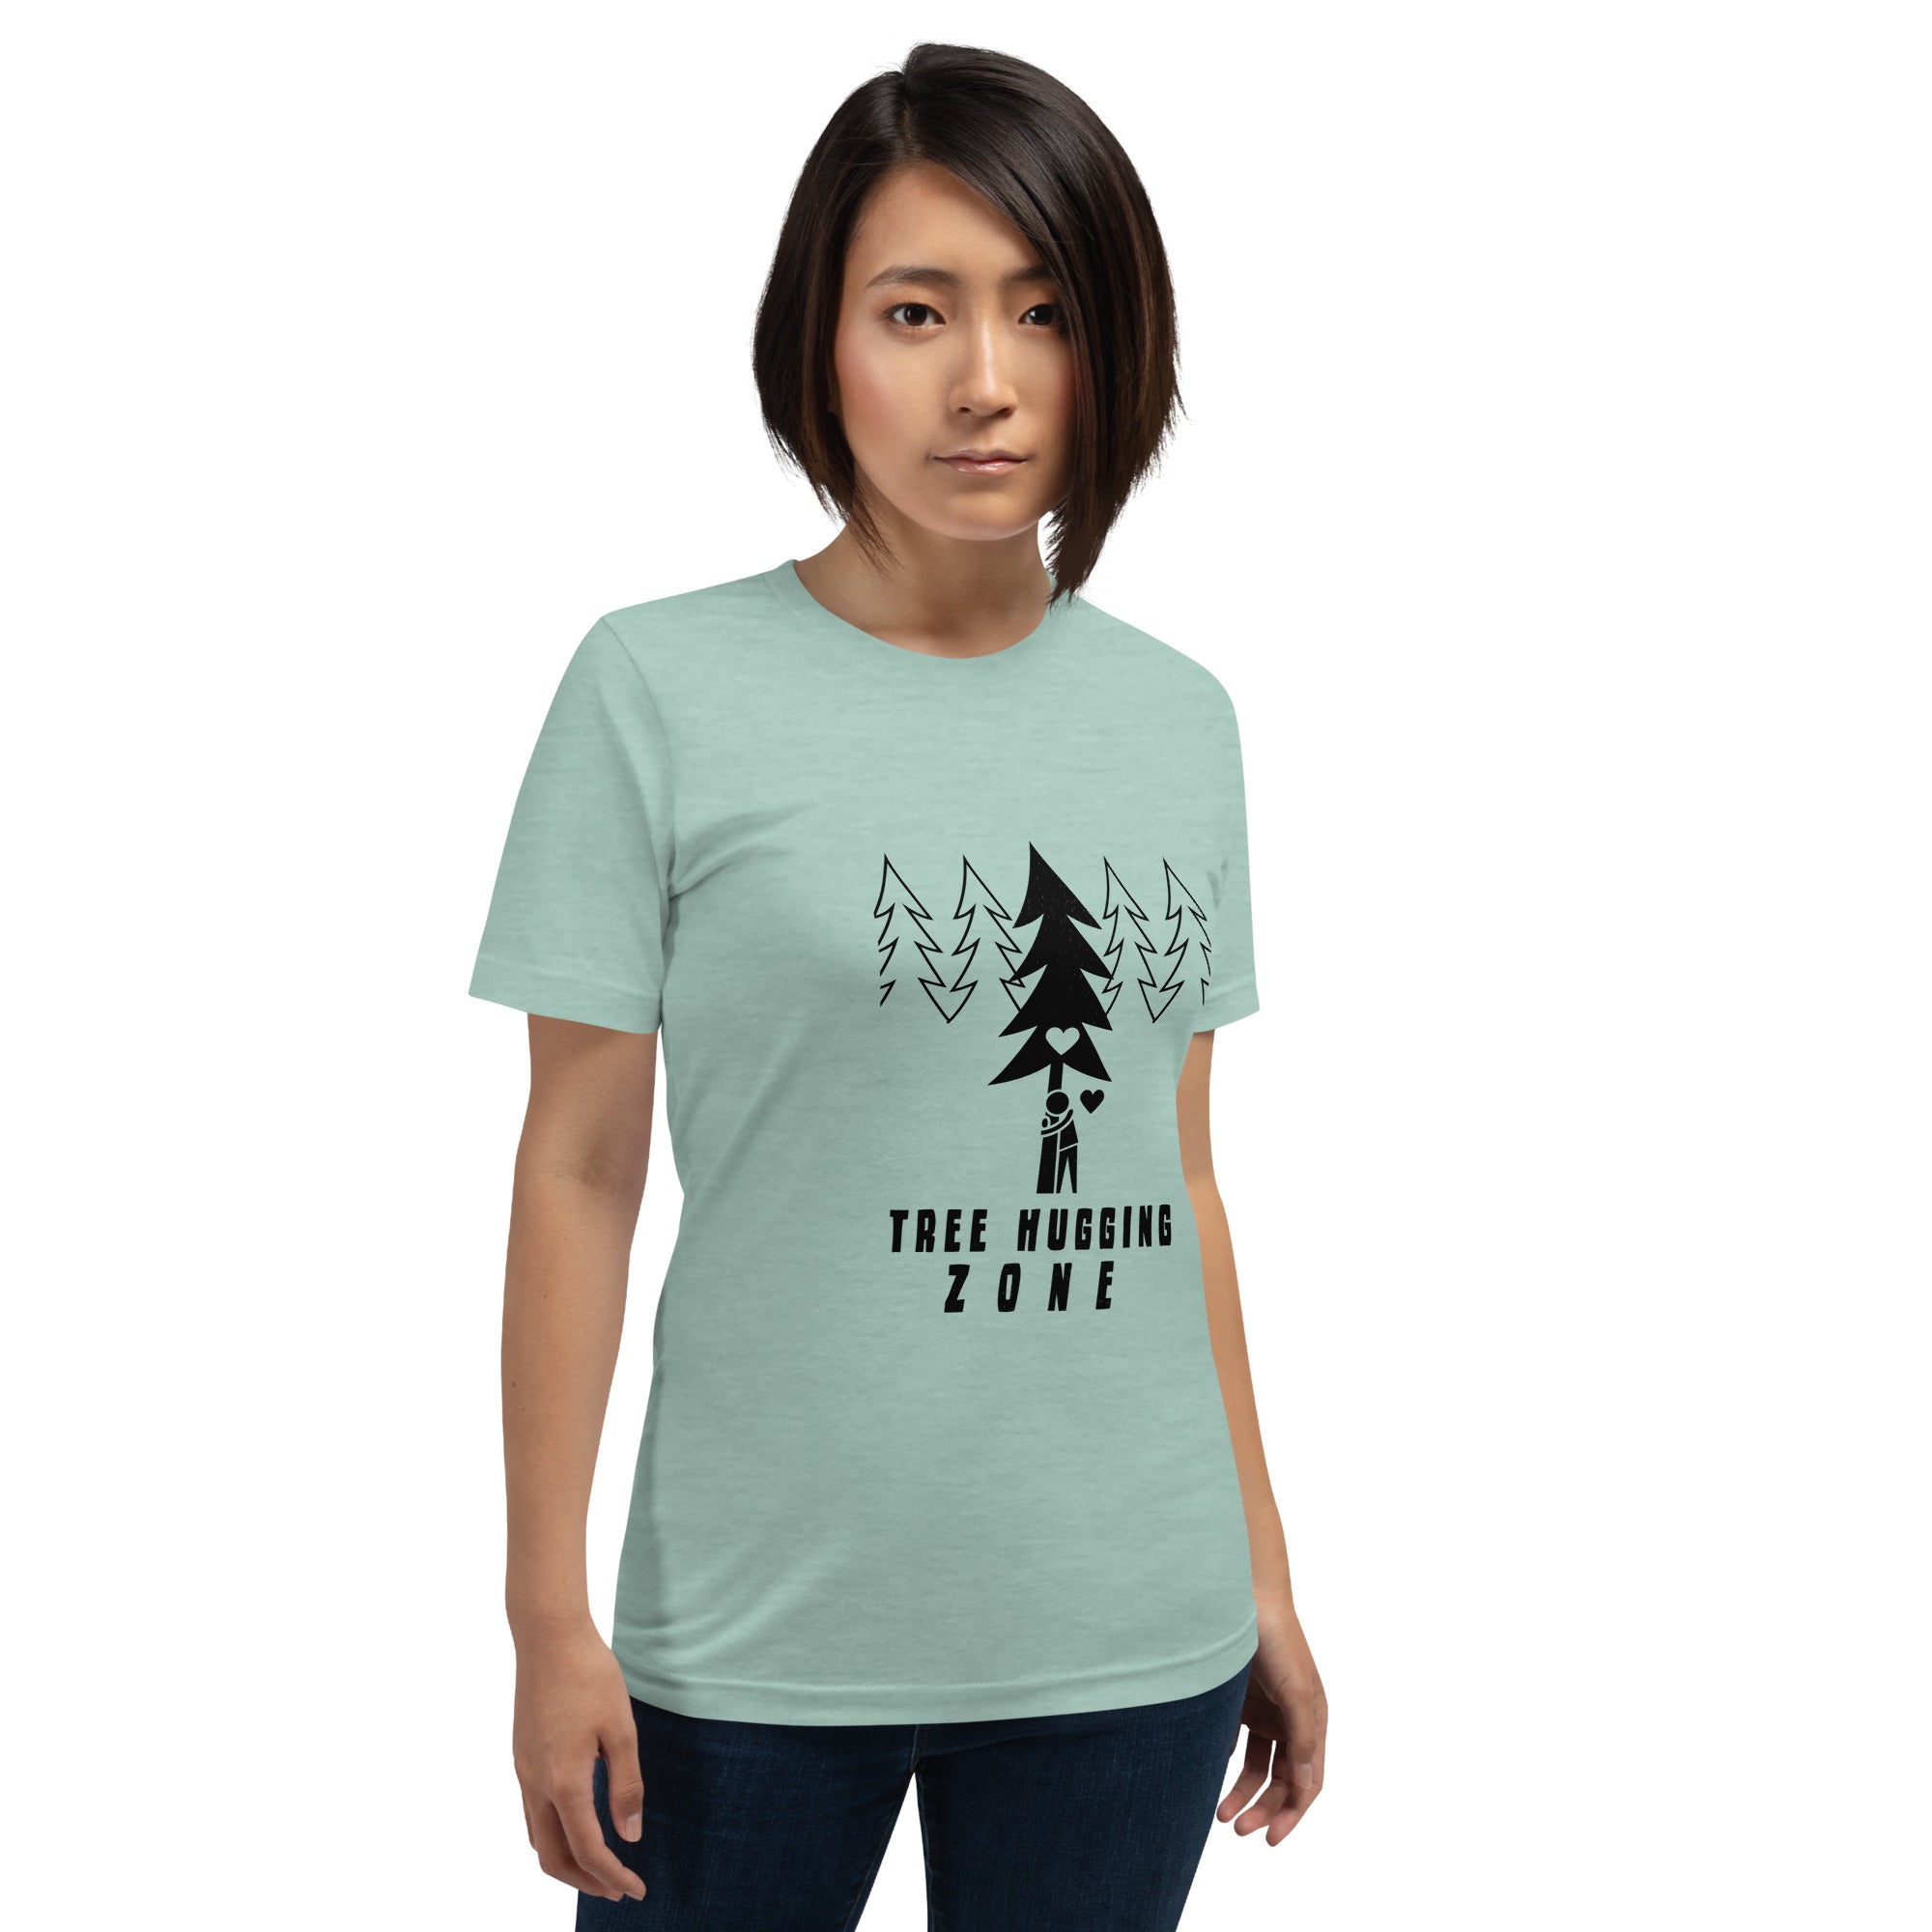 T-shirt en coton unisexe Tree hugging zone sur couleurs chinées claires